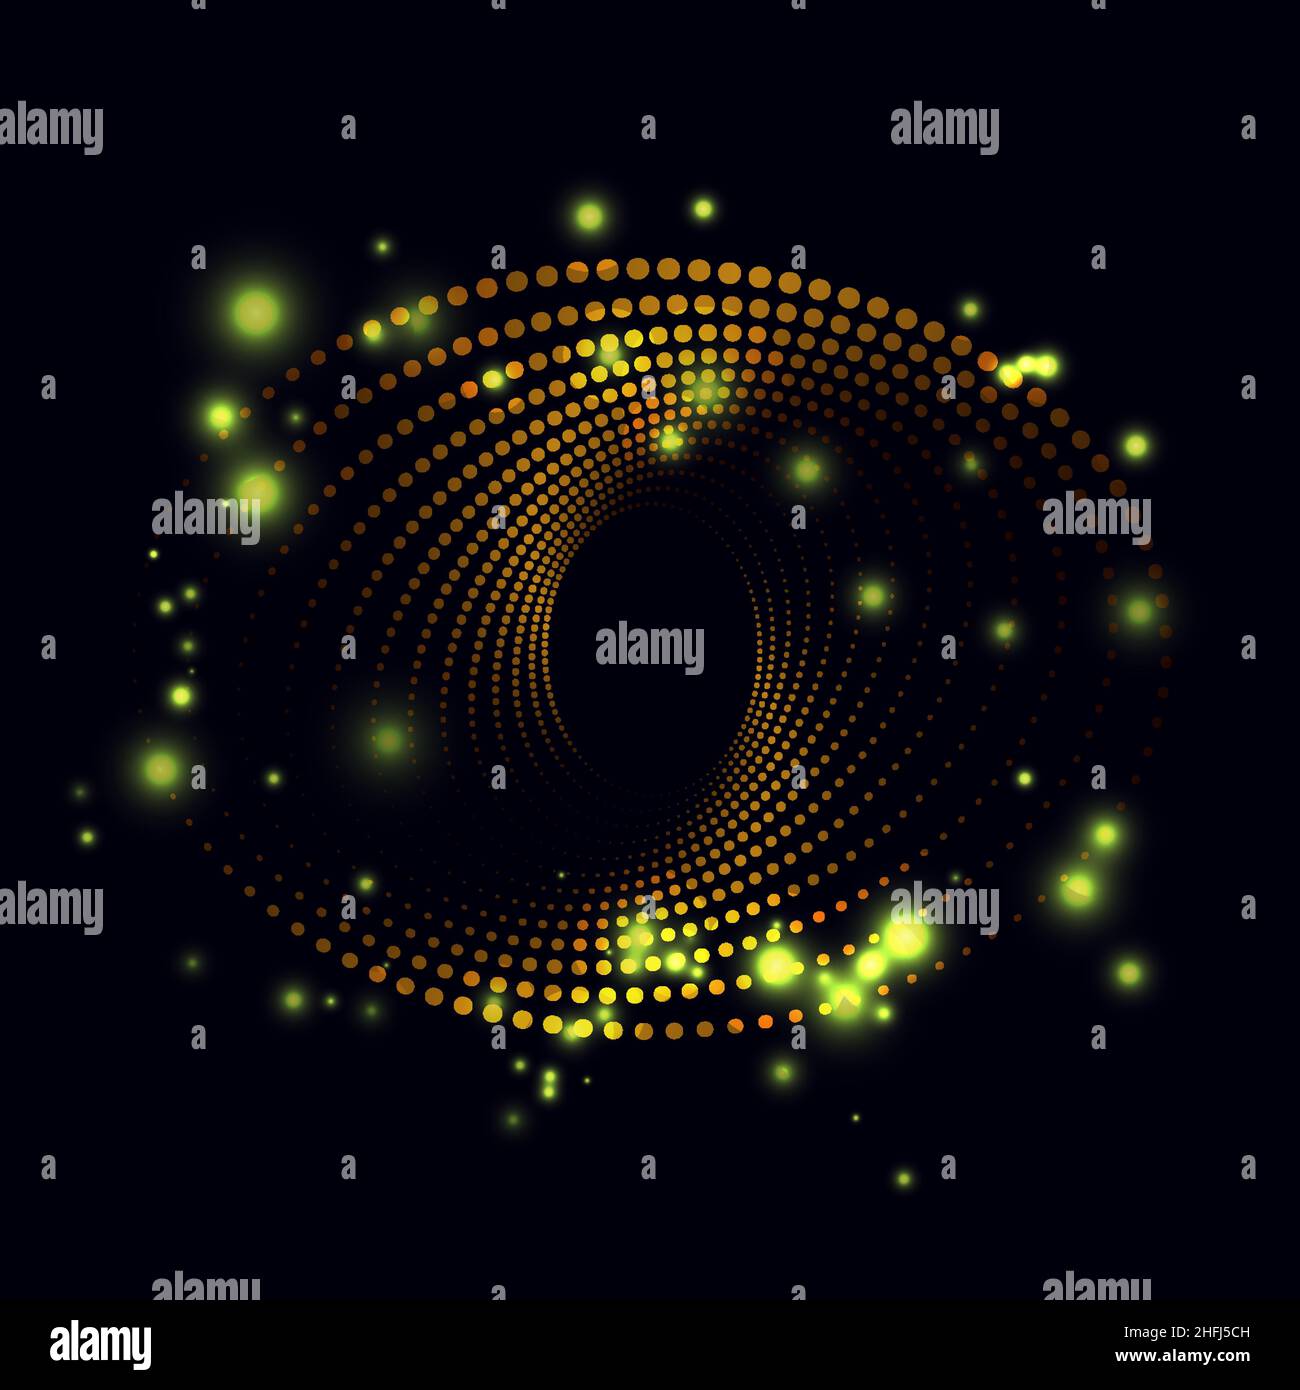 Forme abstraite d'ellipse en spirale composée de points demi-ton, d'étincelles scintillantes de couleur dorée, illustration vectorielle sur fond sombre Illustration de Vecteur